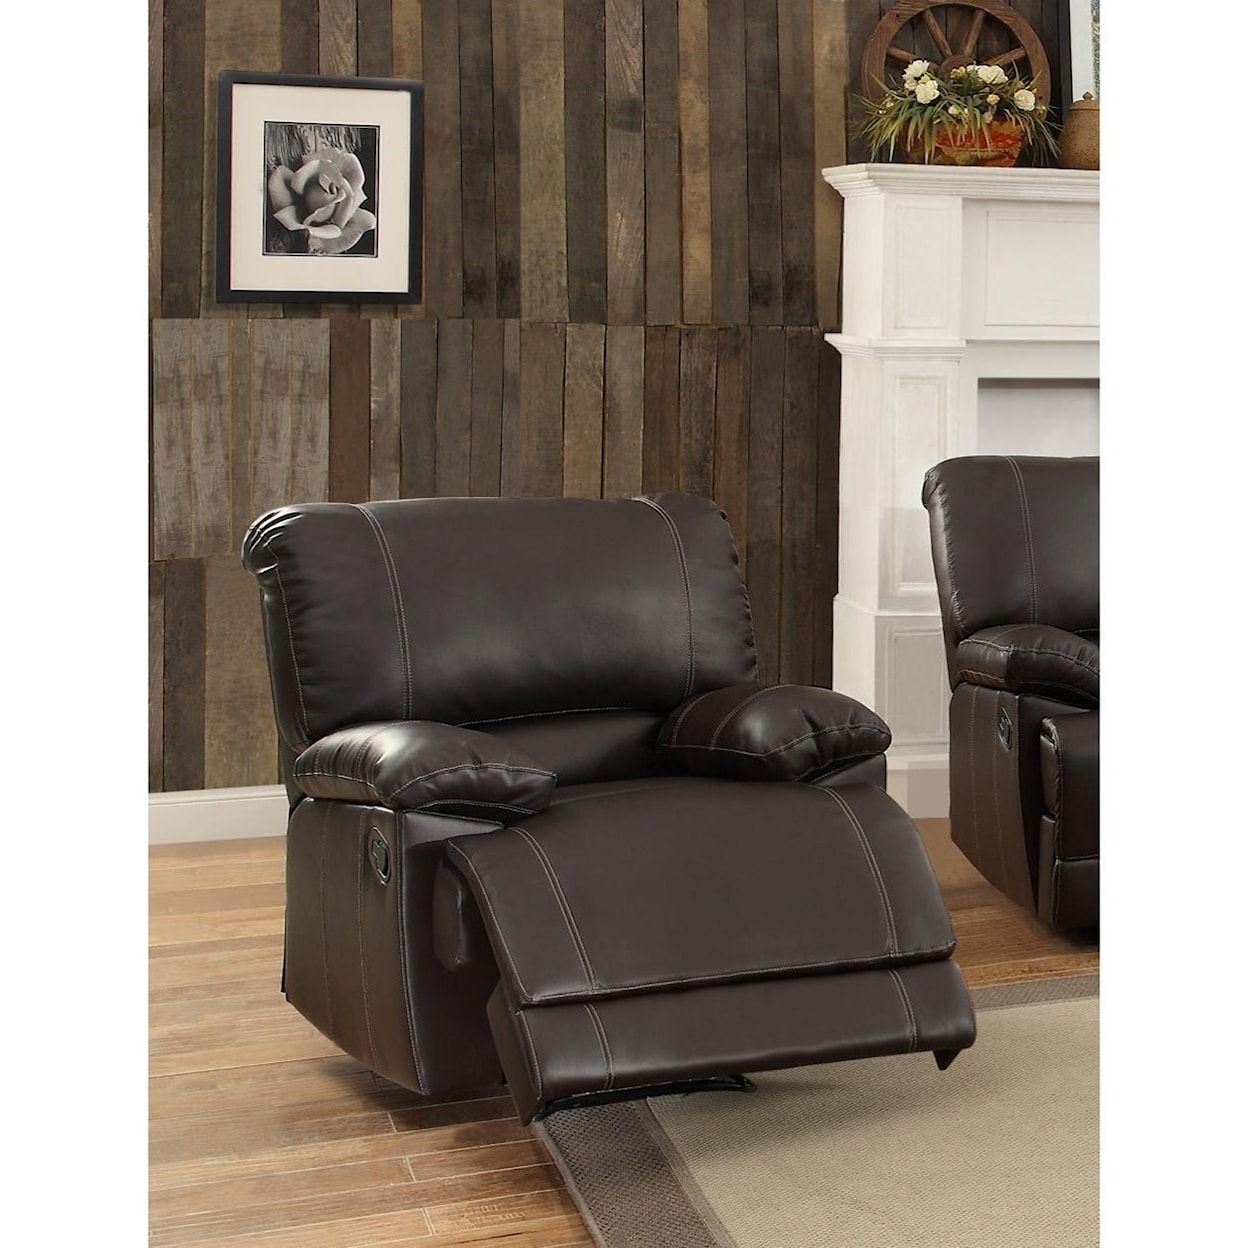 Homelegance Furniture Cassville Reclining Chair